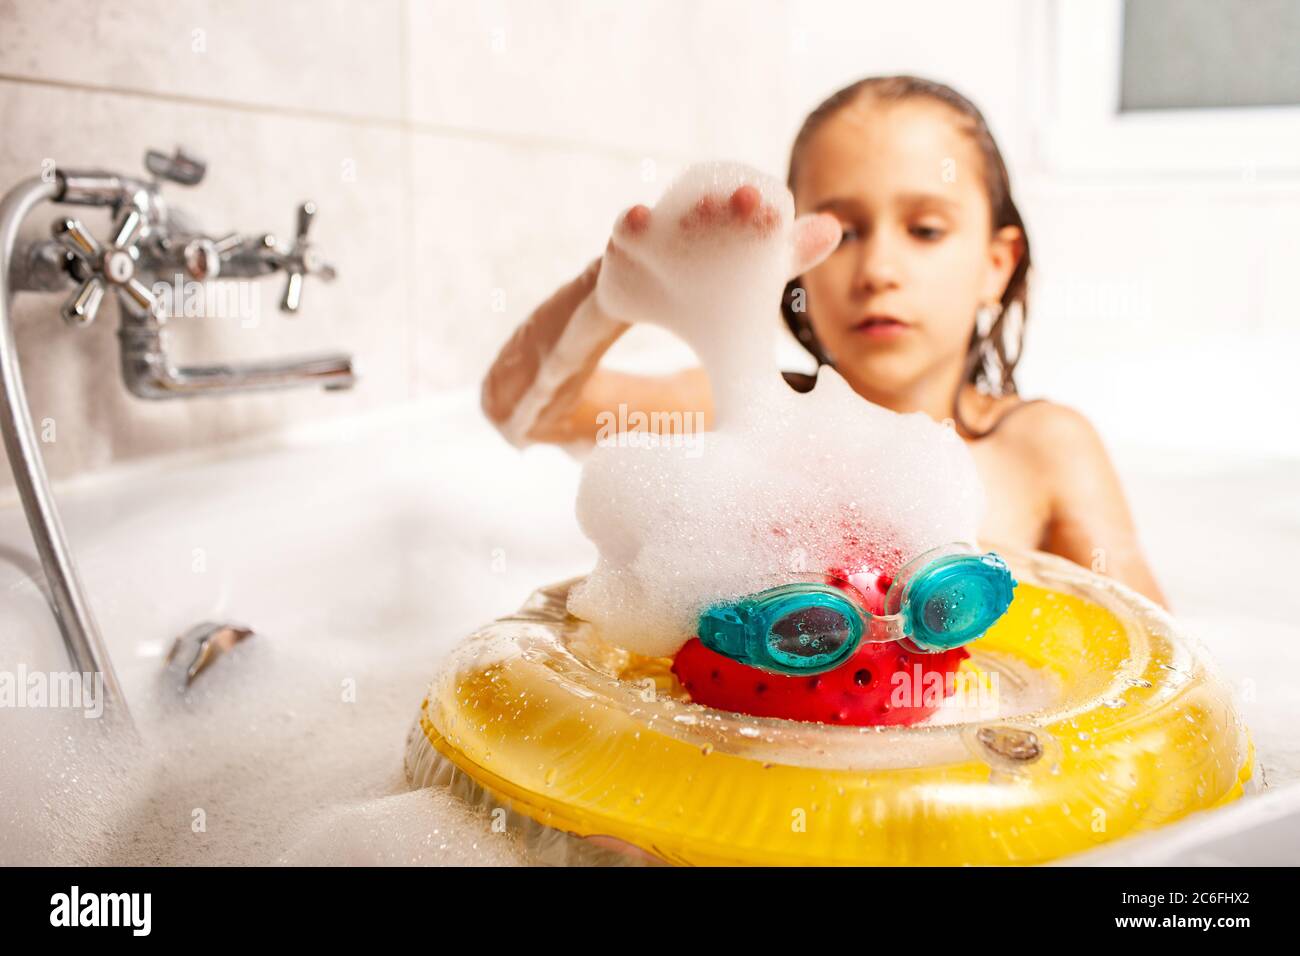 Девочка маленькая купается в ванной. Девочка с игрушками моется в ванной. Девочка моется в ванной с игрушками с игрушками. Девочка играется в ванной. Видео купается ванна девочки